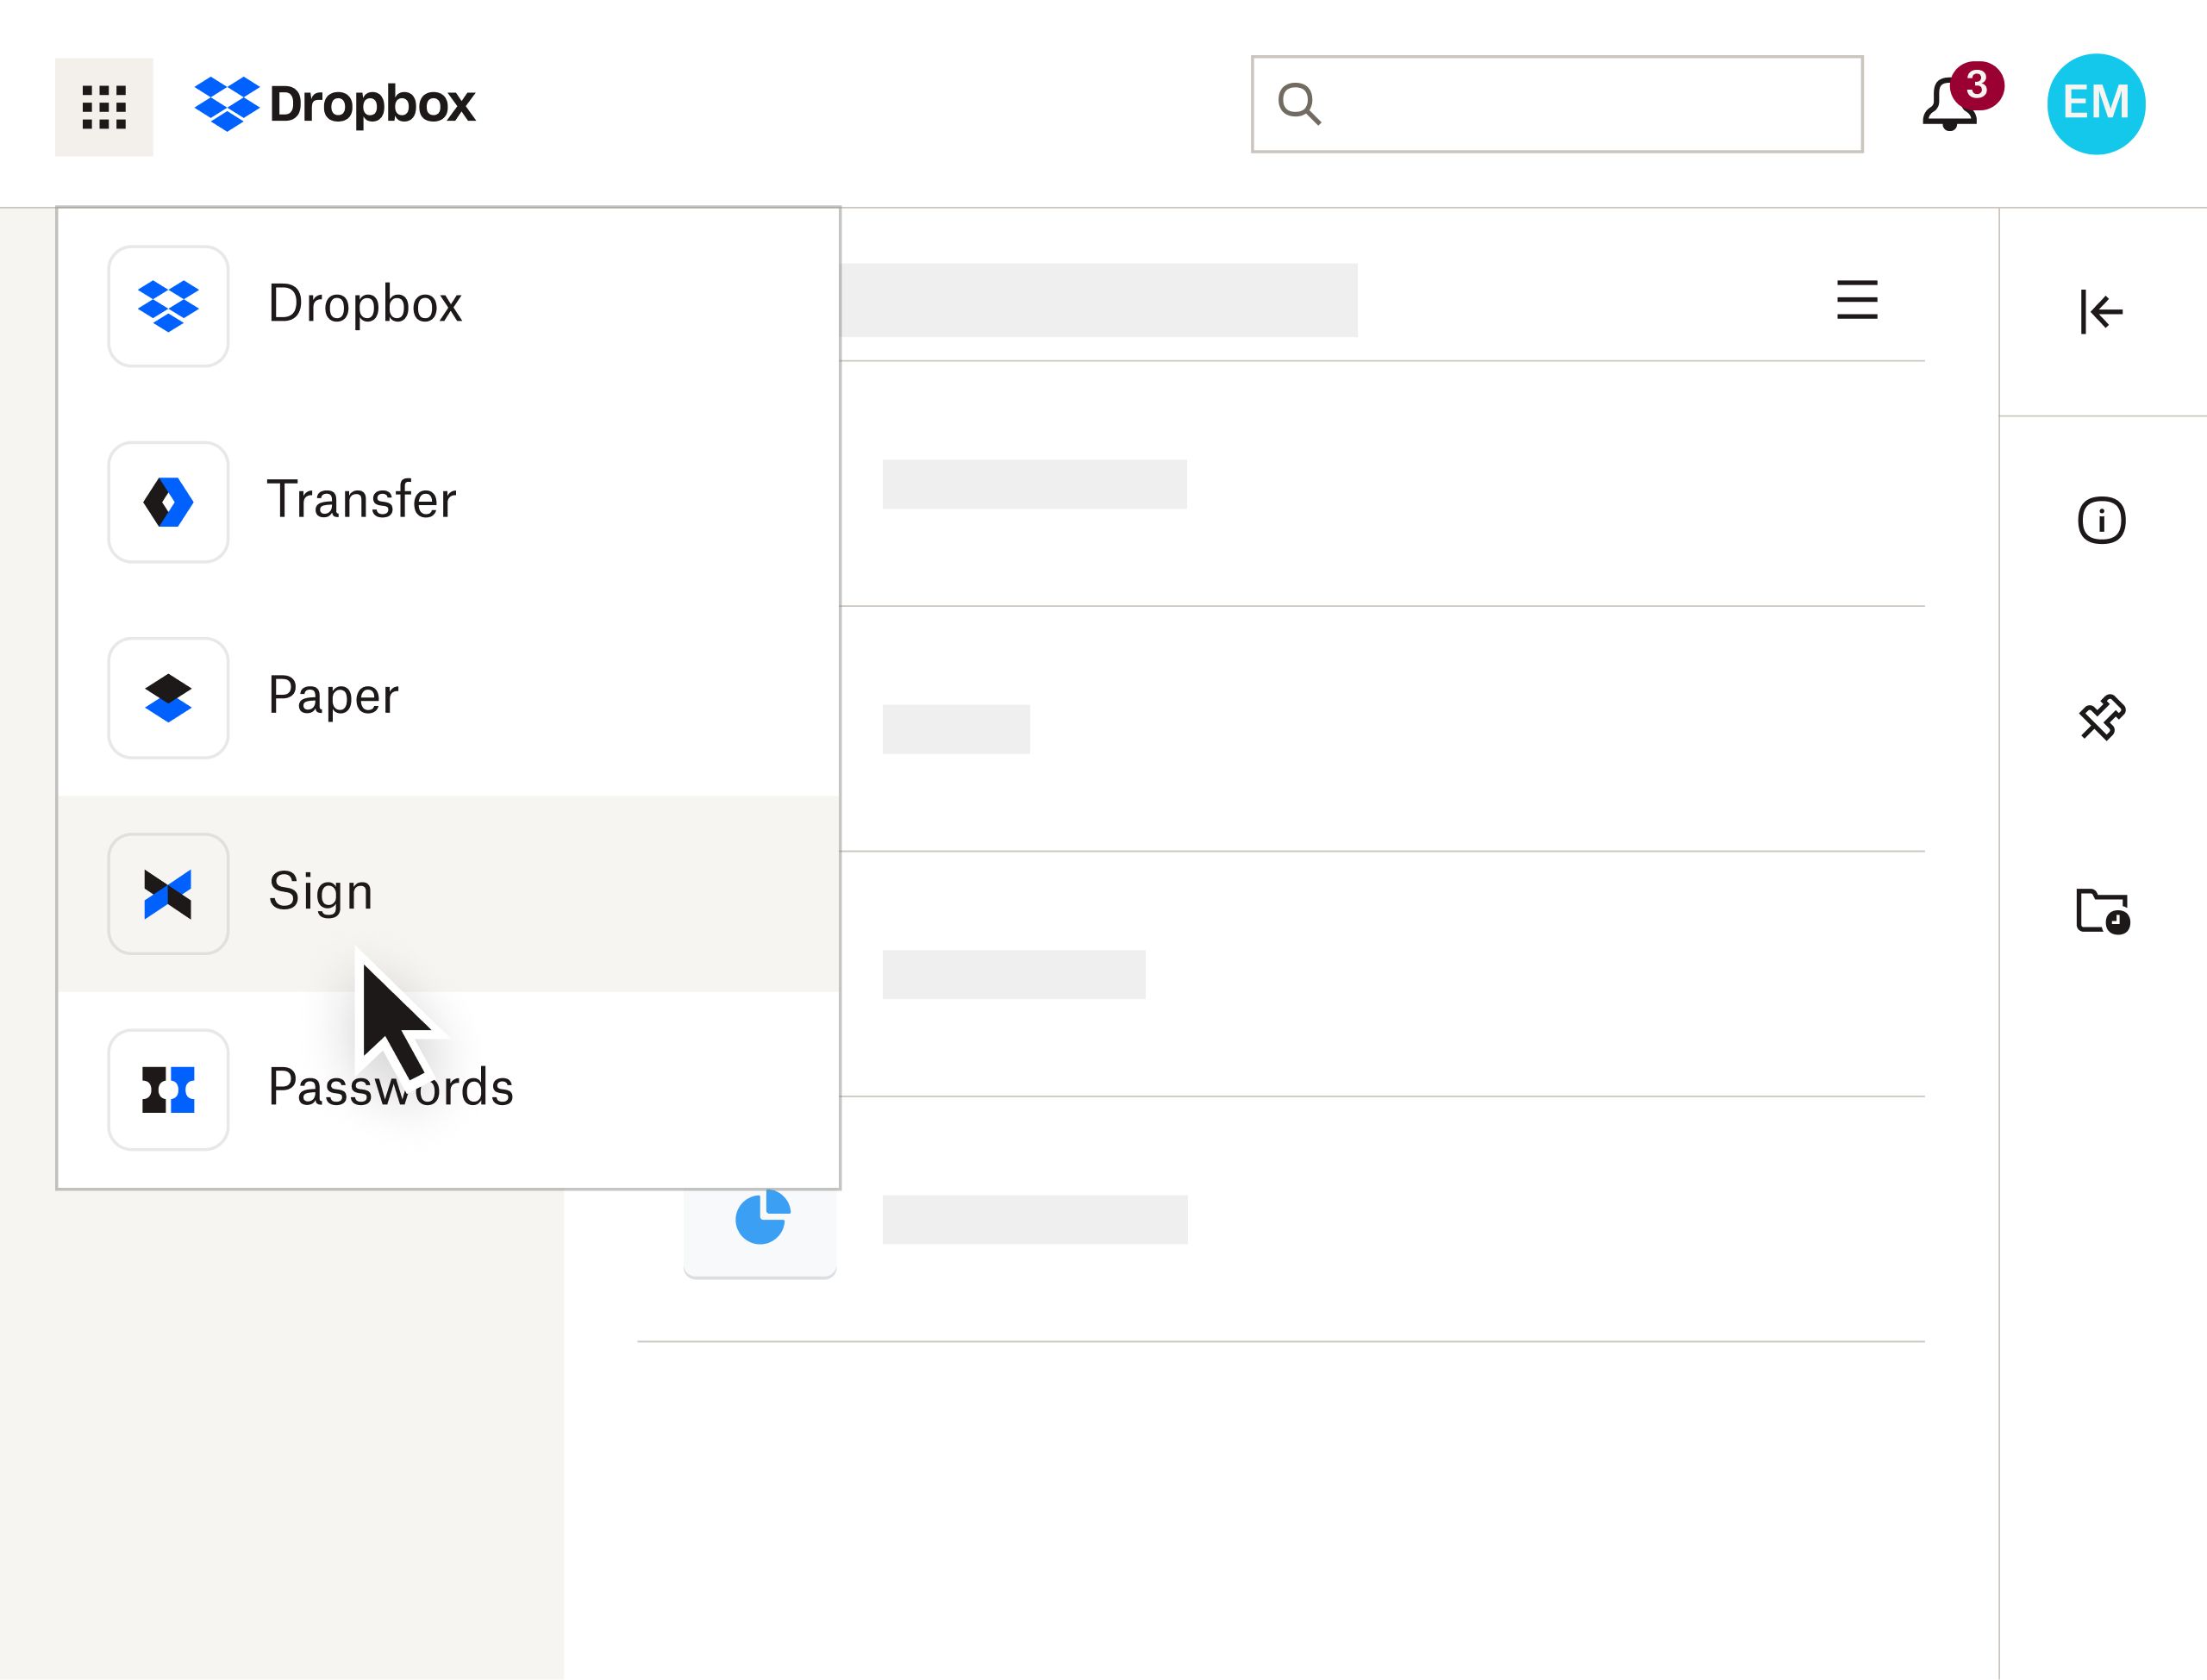 La interfaz de Dropbox con un usuario que selecciona Sign en el menú desplegable de un producto